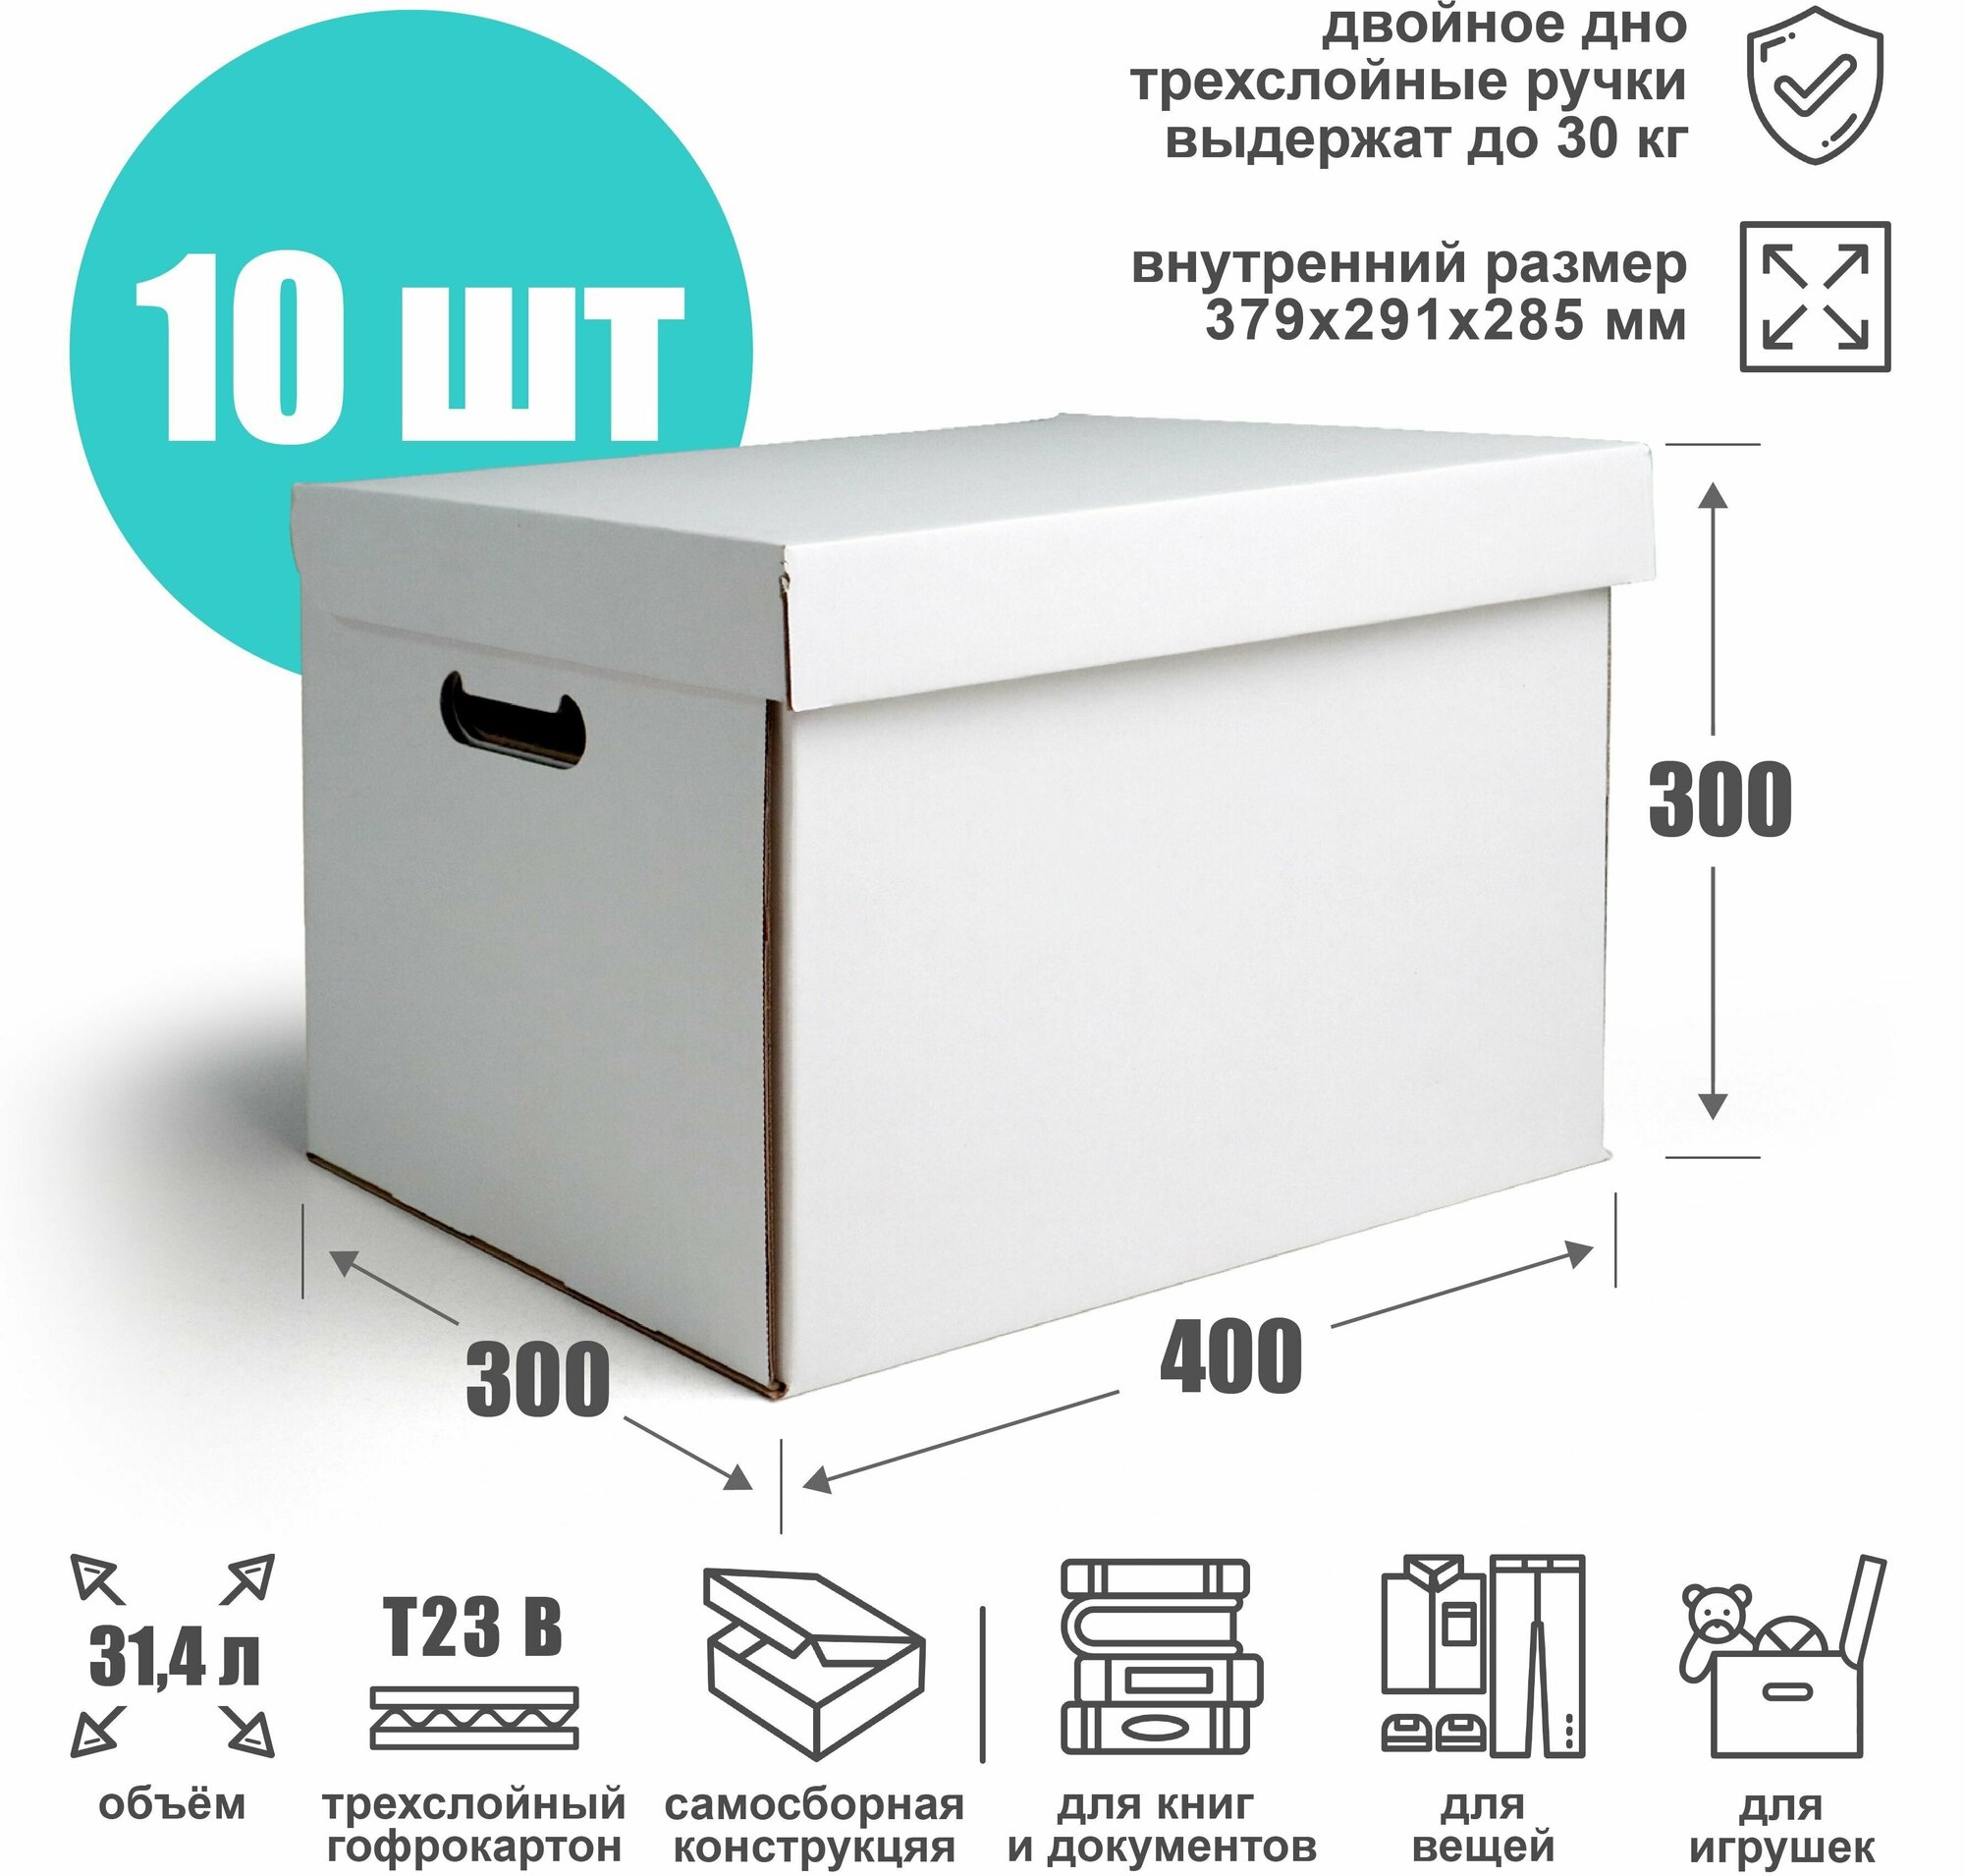 Картонная архивная коробка 379х291х285 мм (Т23 В) белая - 10 шт. Ящик для хранения и переезда объем 314 л. Гофрокороб для стеллажа и шкафа.